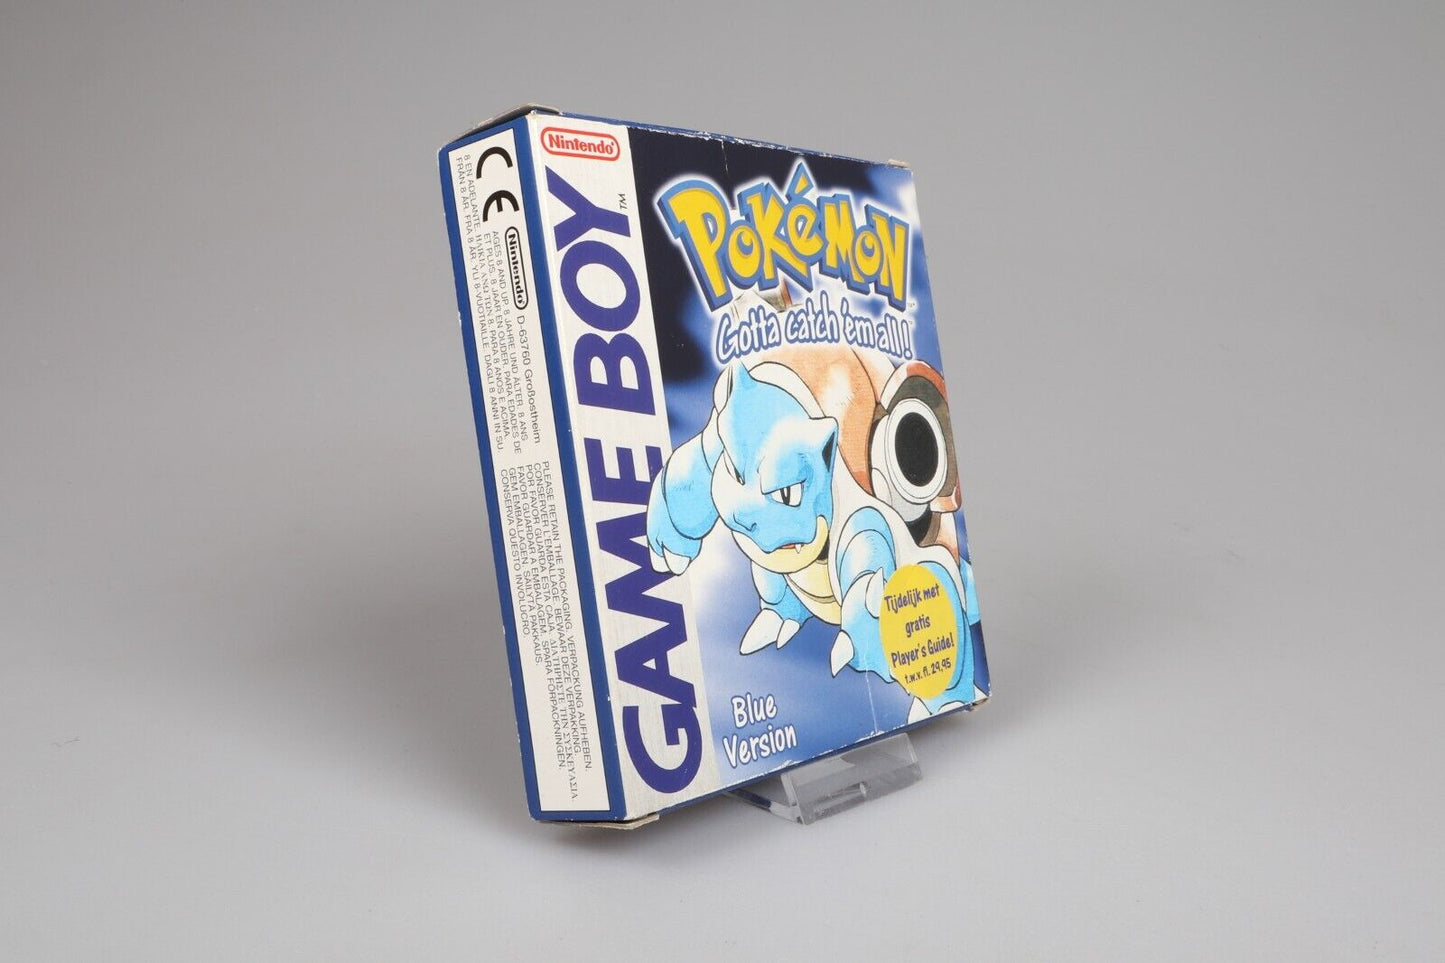 Gameboy | Pokemon Blue-versie (EUR) (PAL)